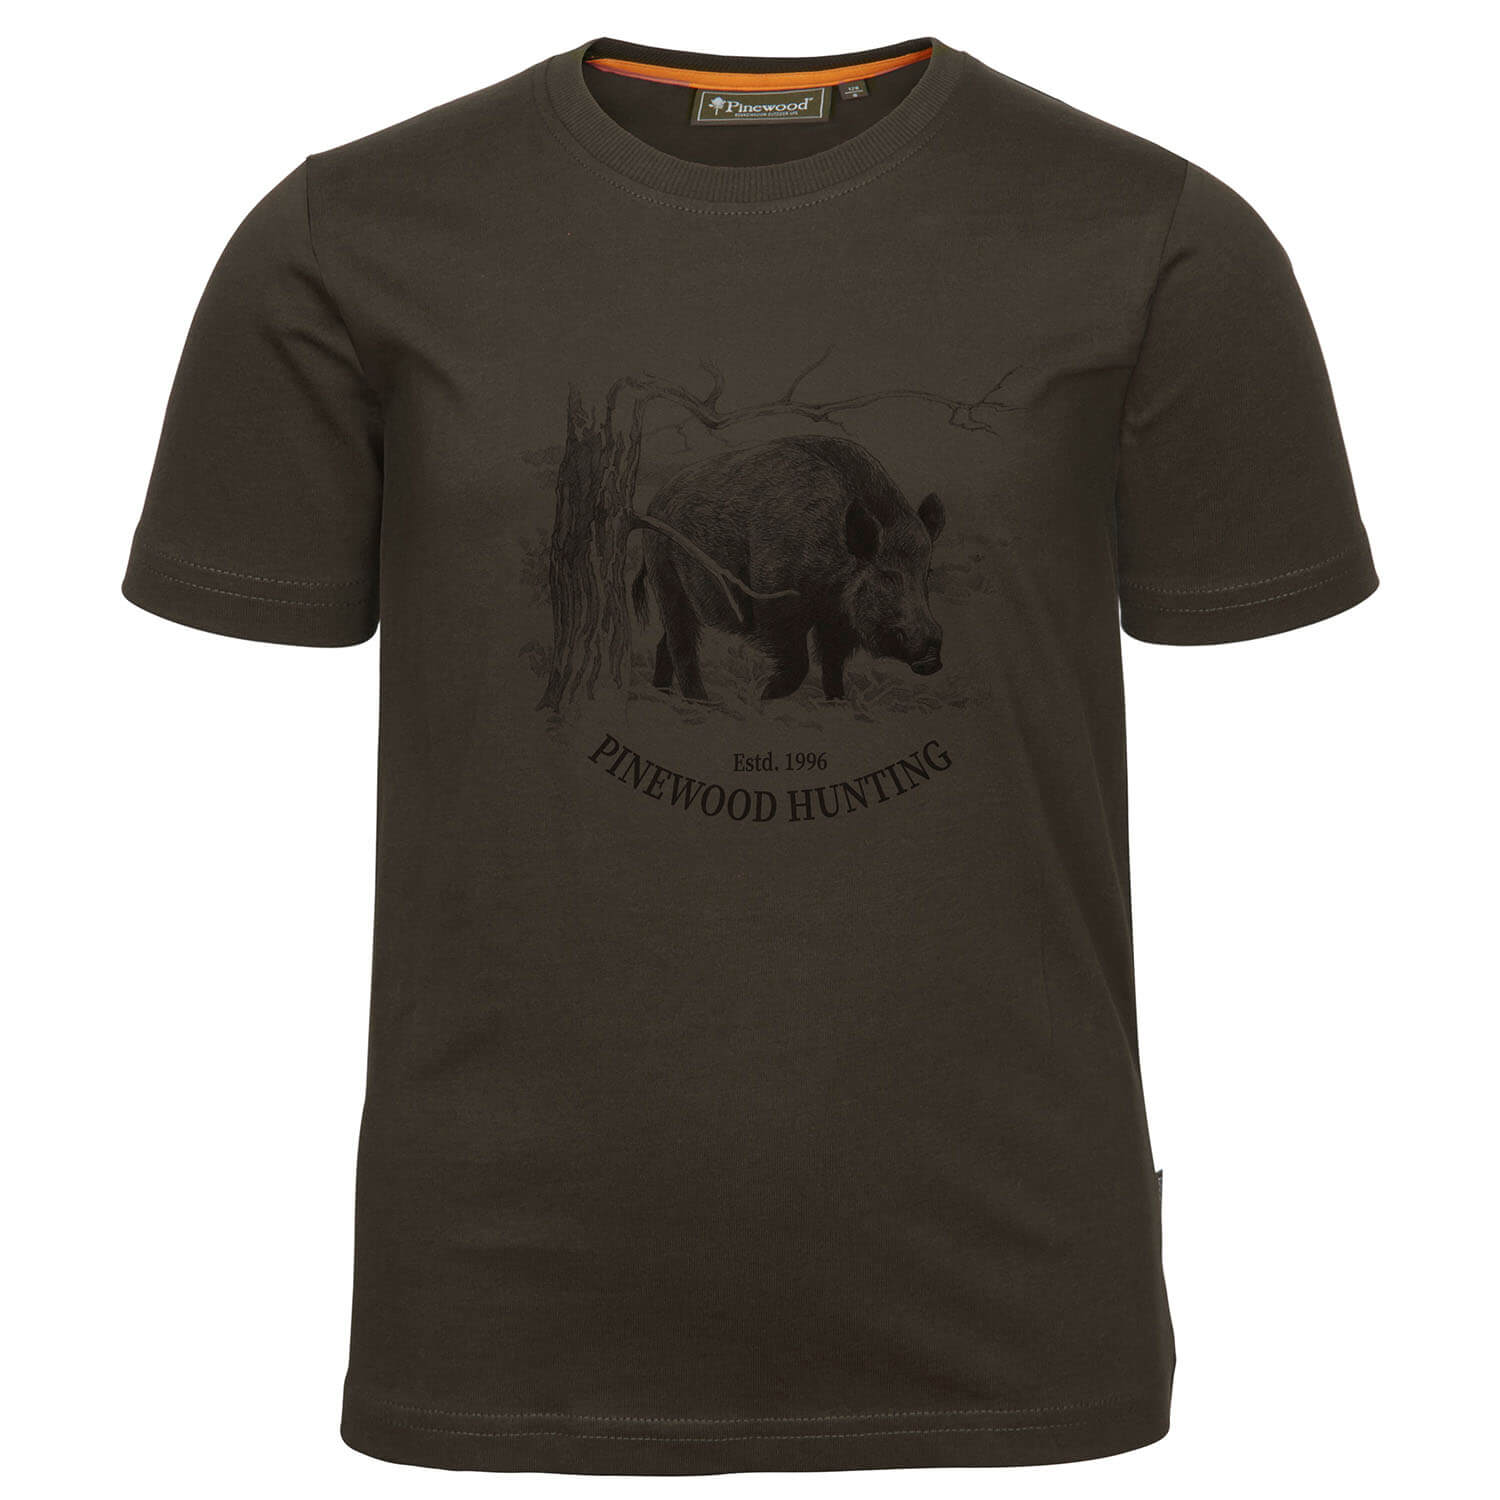  Pinewood T-shirt Wild Zwijn Kinderen - Kinder jachtkleding